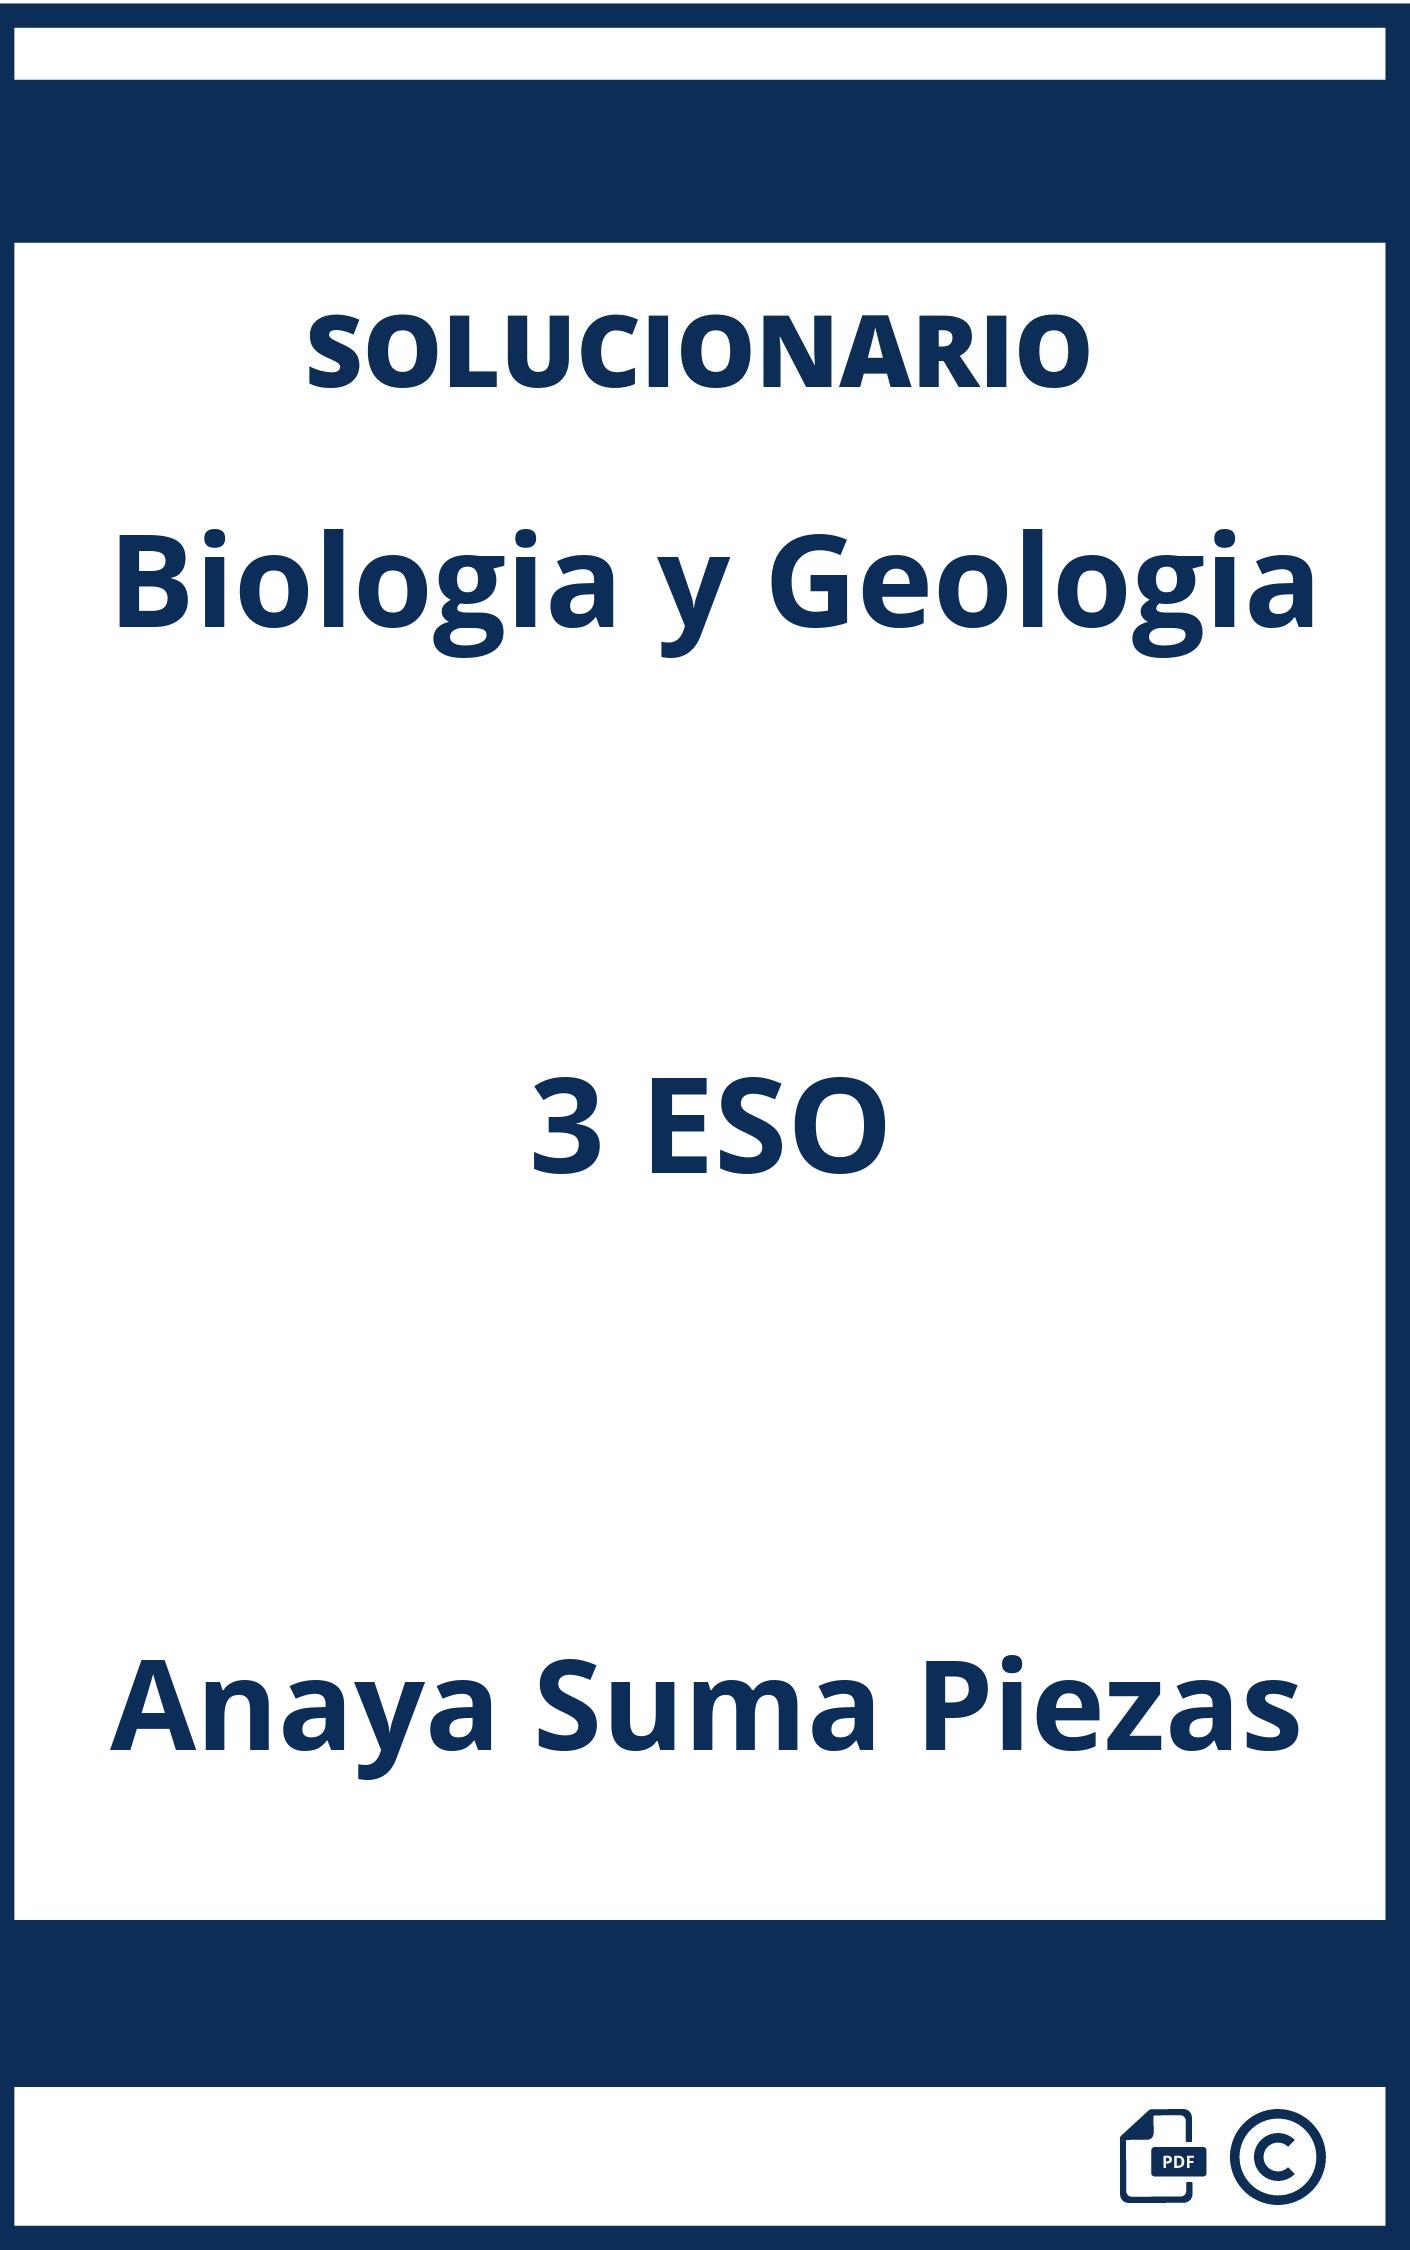 Solucionario Biologia y Geologia 3 ESO Anaya Suma Piezas